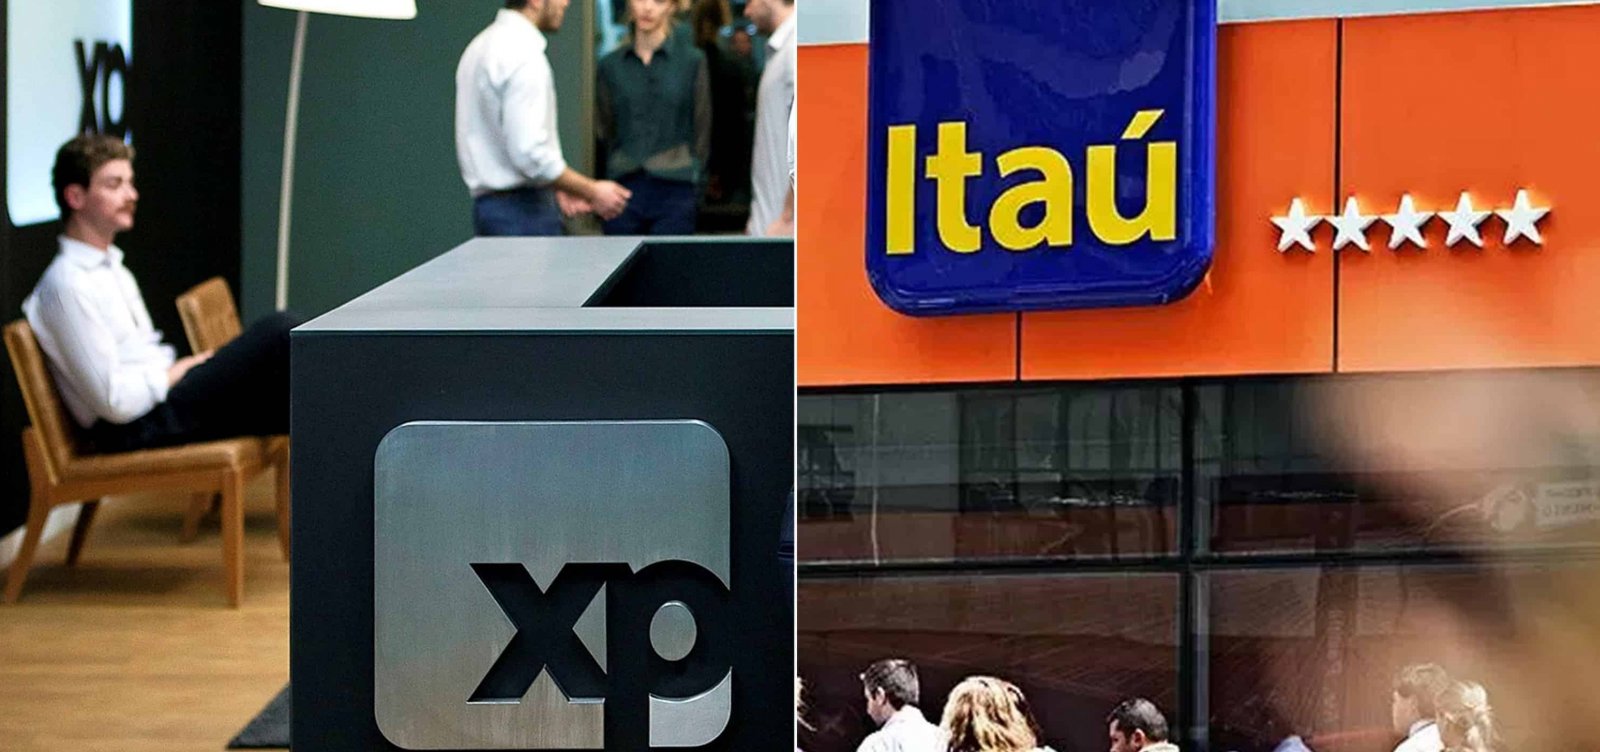 Banco Central aprova operação entre Itaú Unibanco e XP, mas com restrições